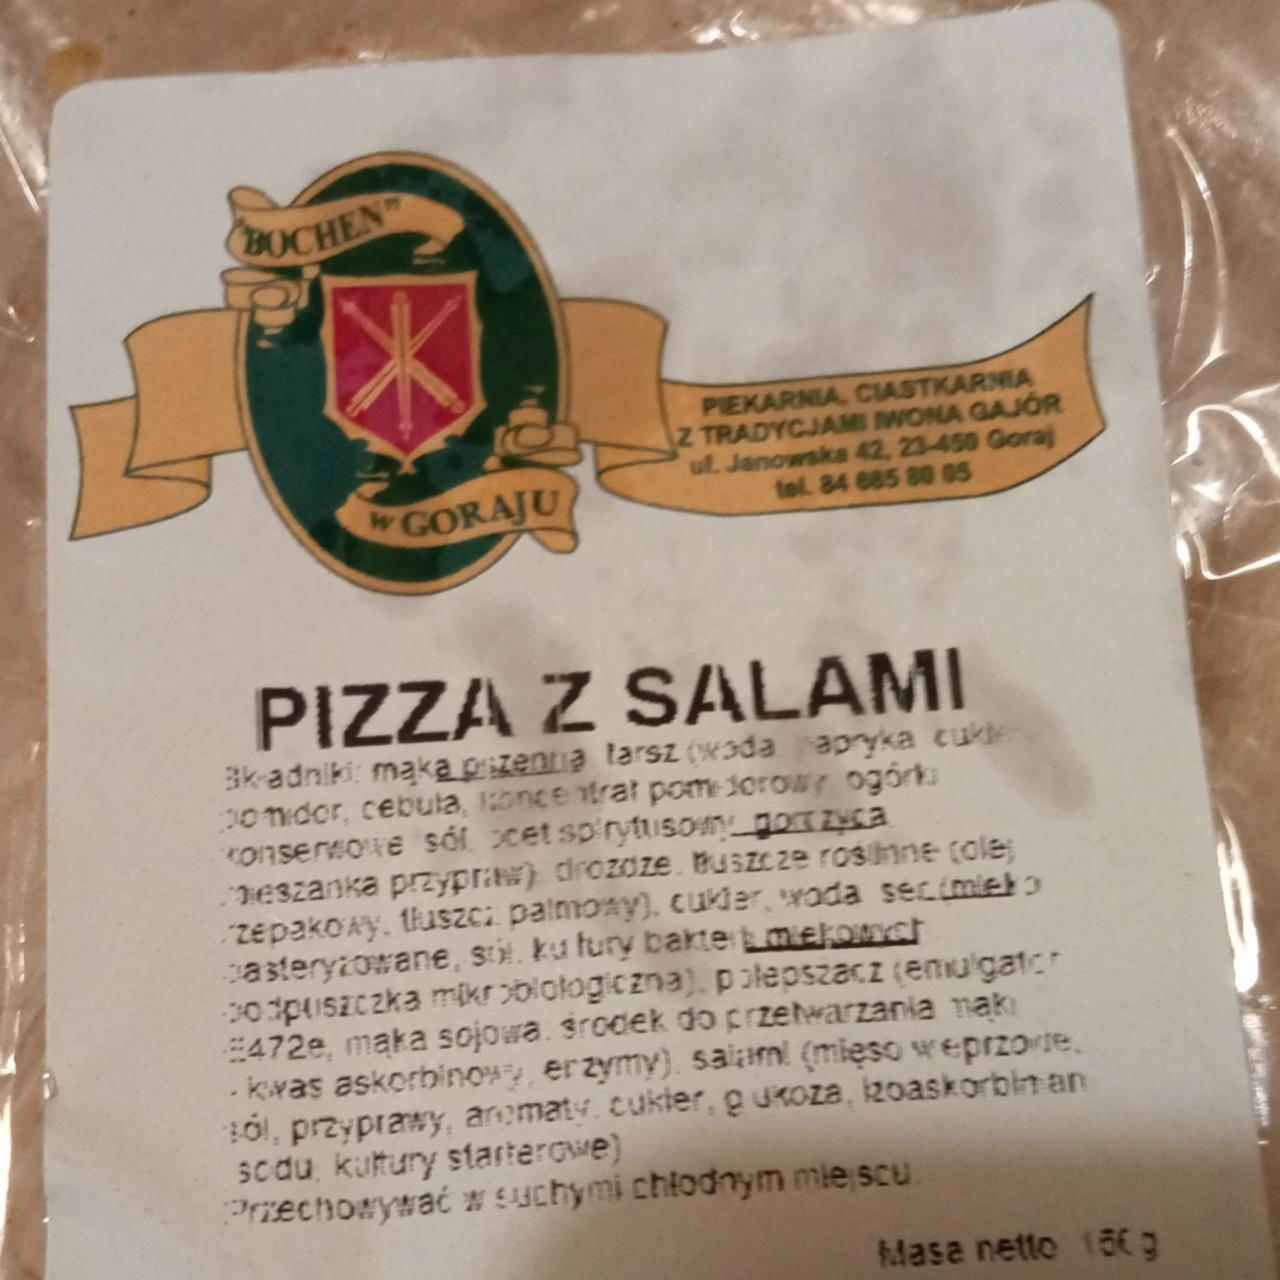 Zdjęcia - Pizza z salami Bochen w Goraju